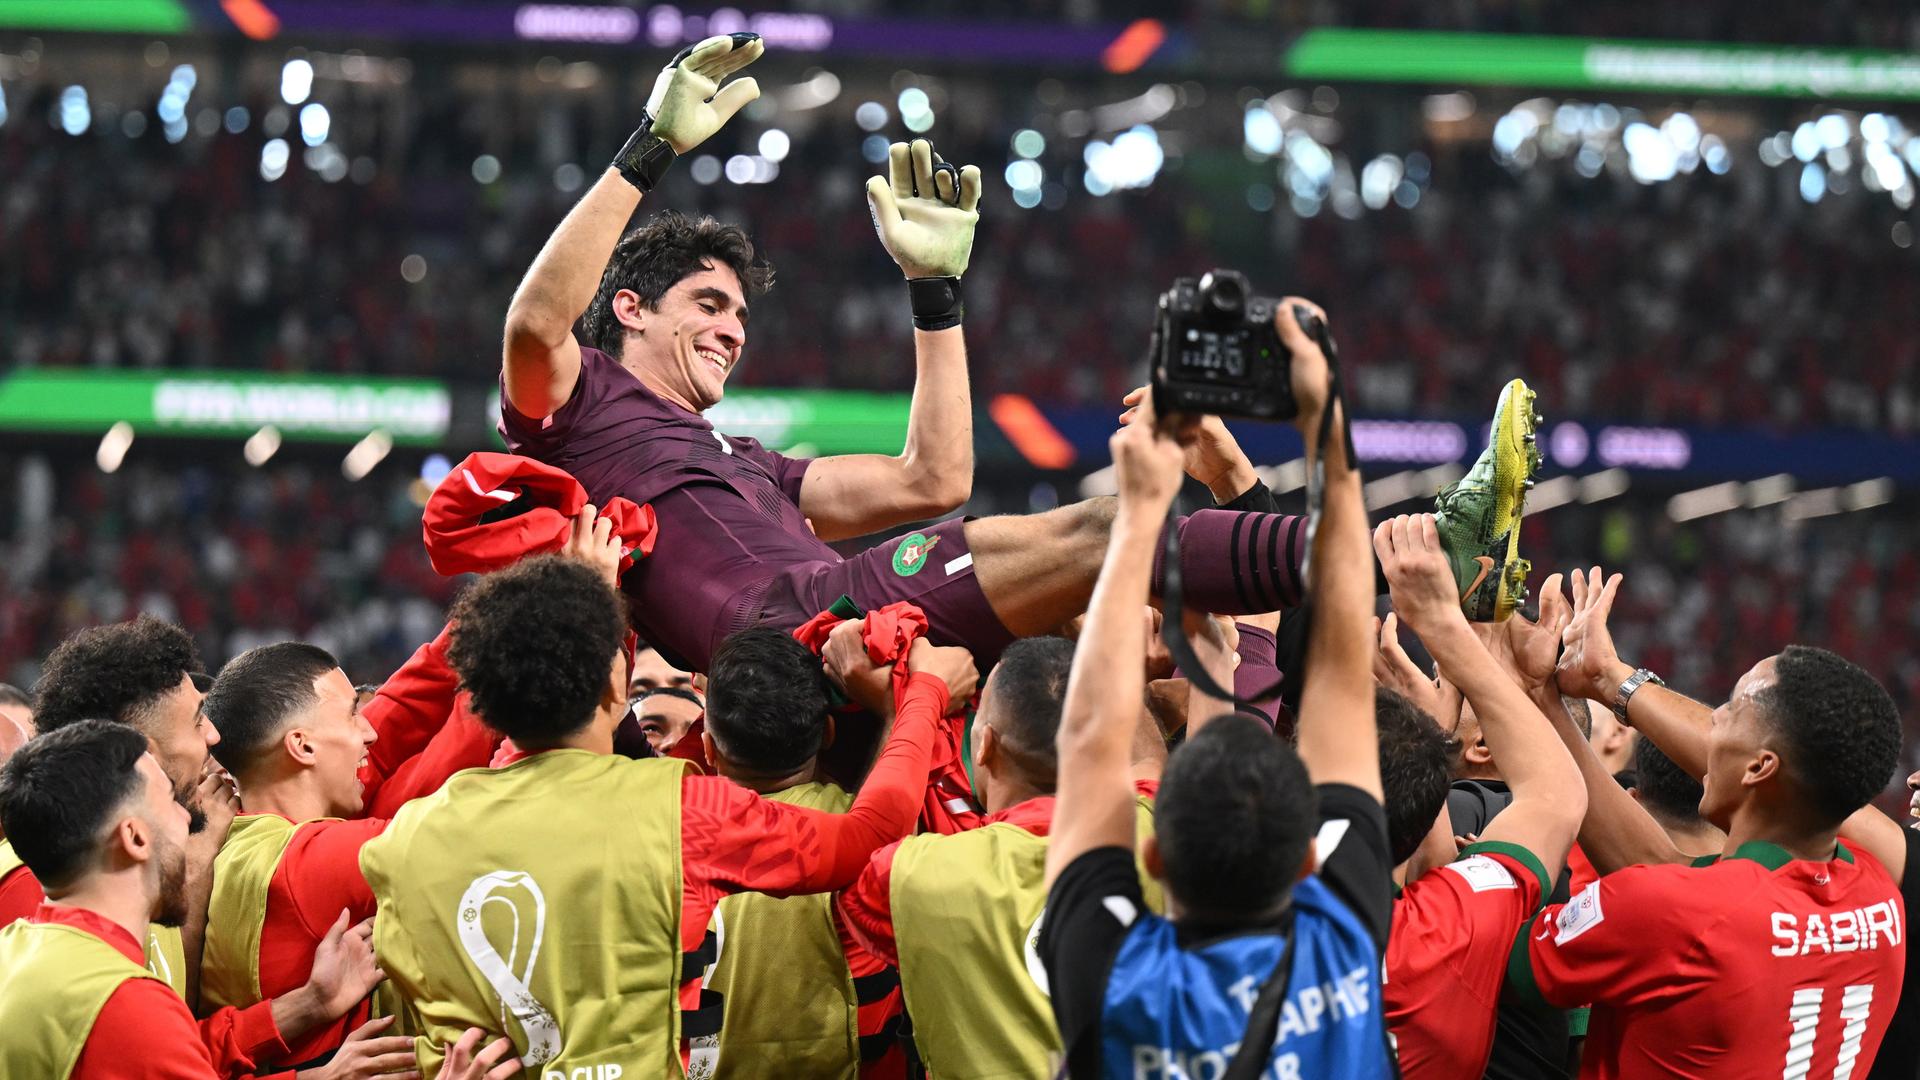 Marokkos Torwart Bono und seine Mitspieler jubeln nach dem Sieg im Elfmeterschiessen gegen Spanien bei der Fußball-WM 2022 in Katar. Die Spieler werfen ihren Torwart vor Freude in die Luft und lassen ihn hochleben